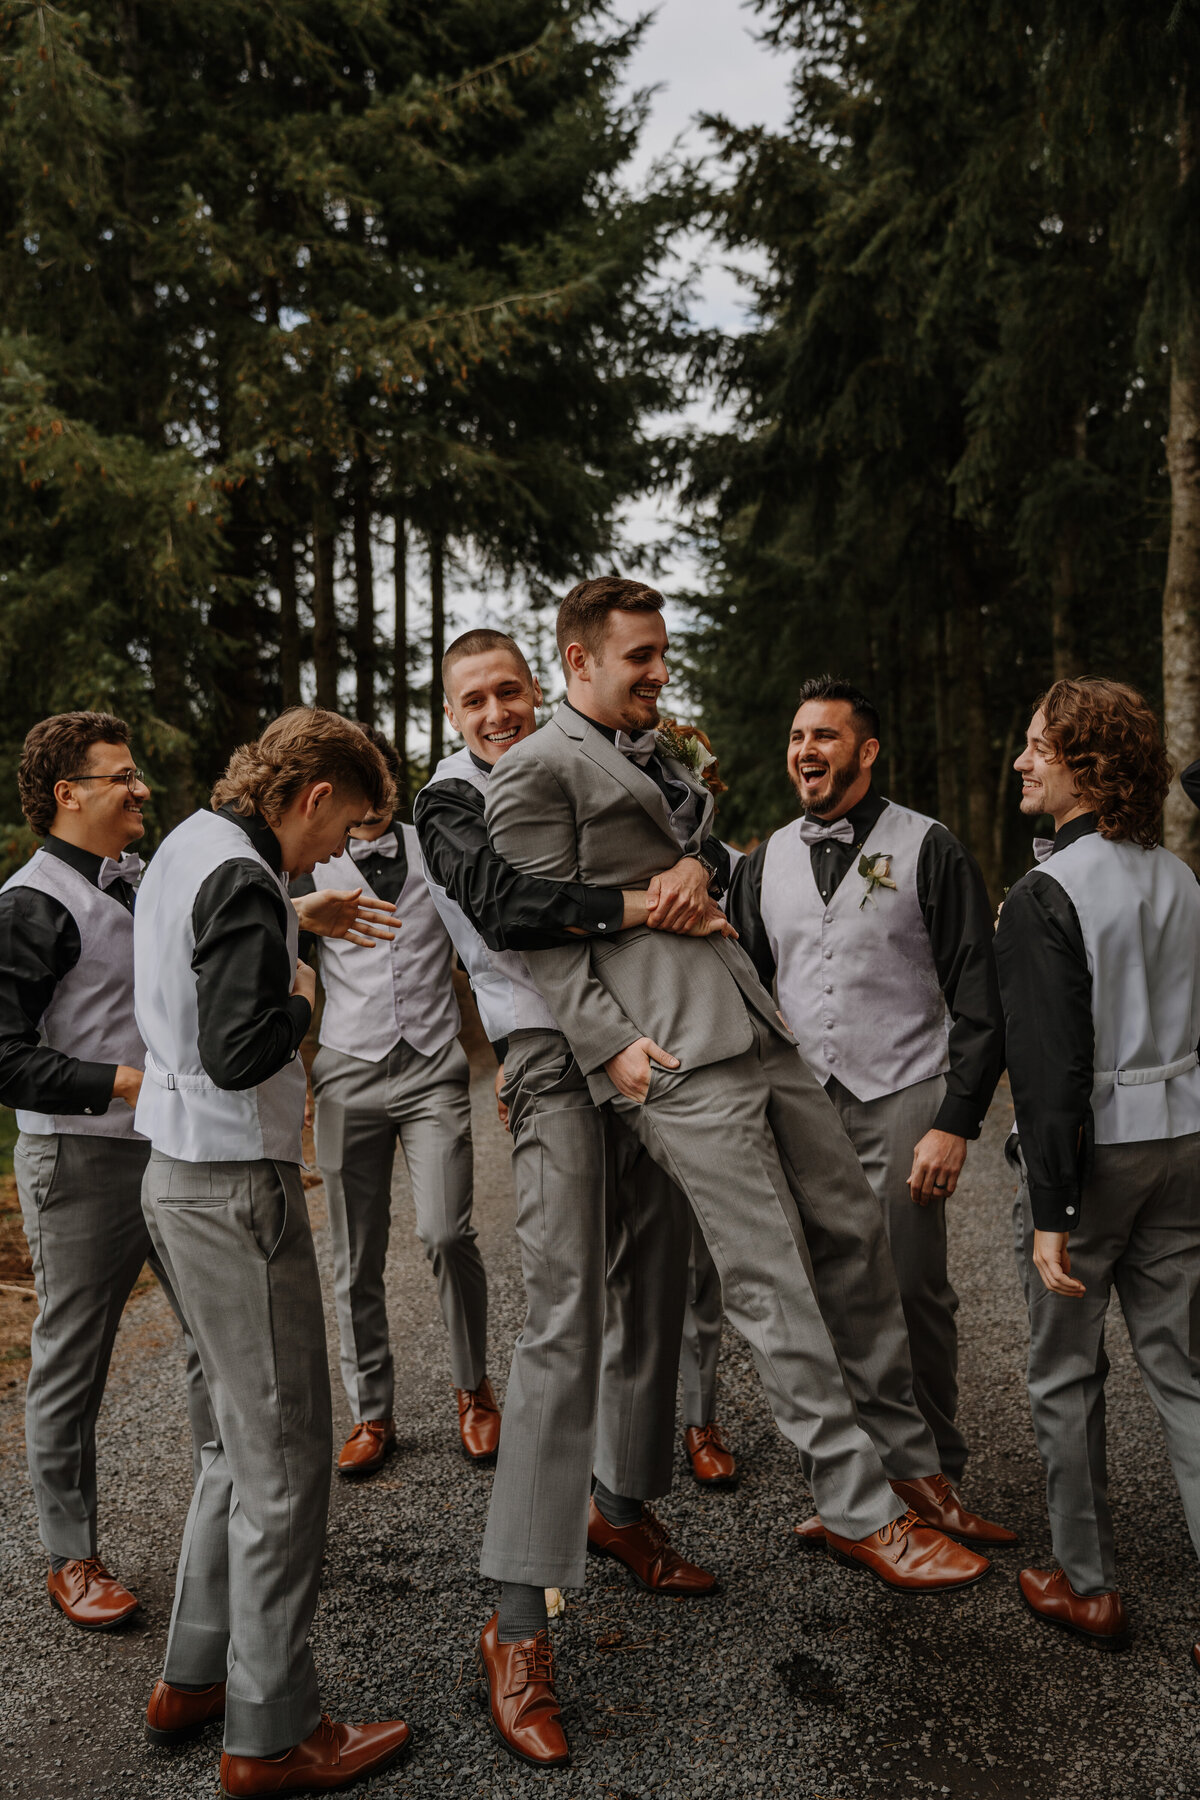 Group of groomsmen holding groom in the air